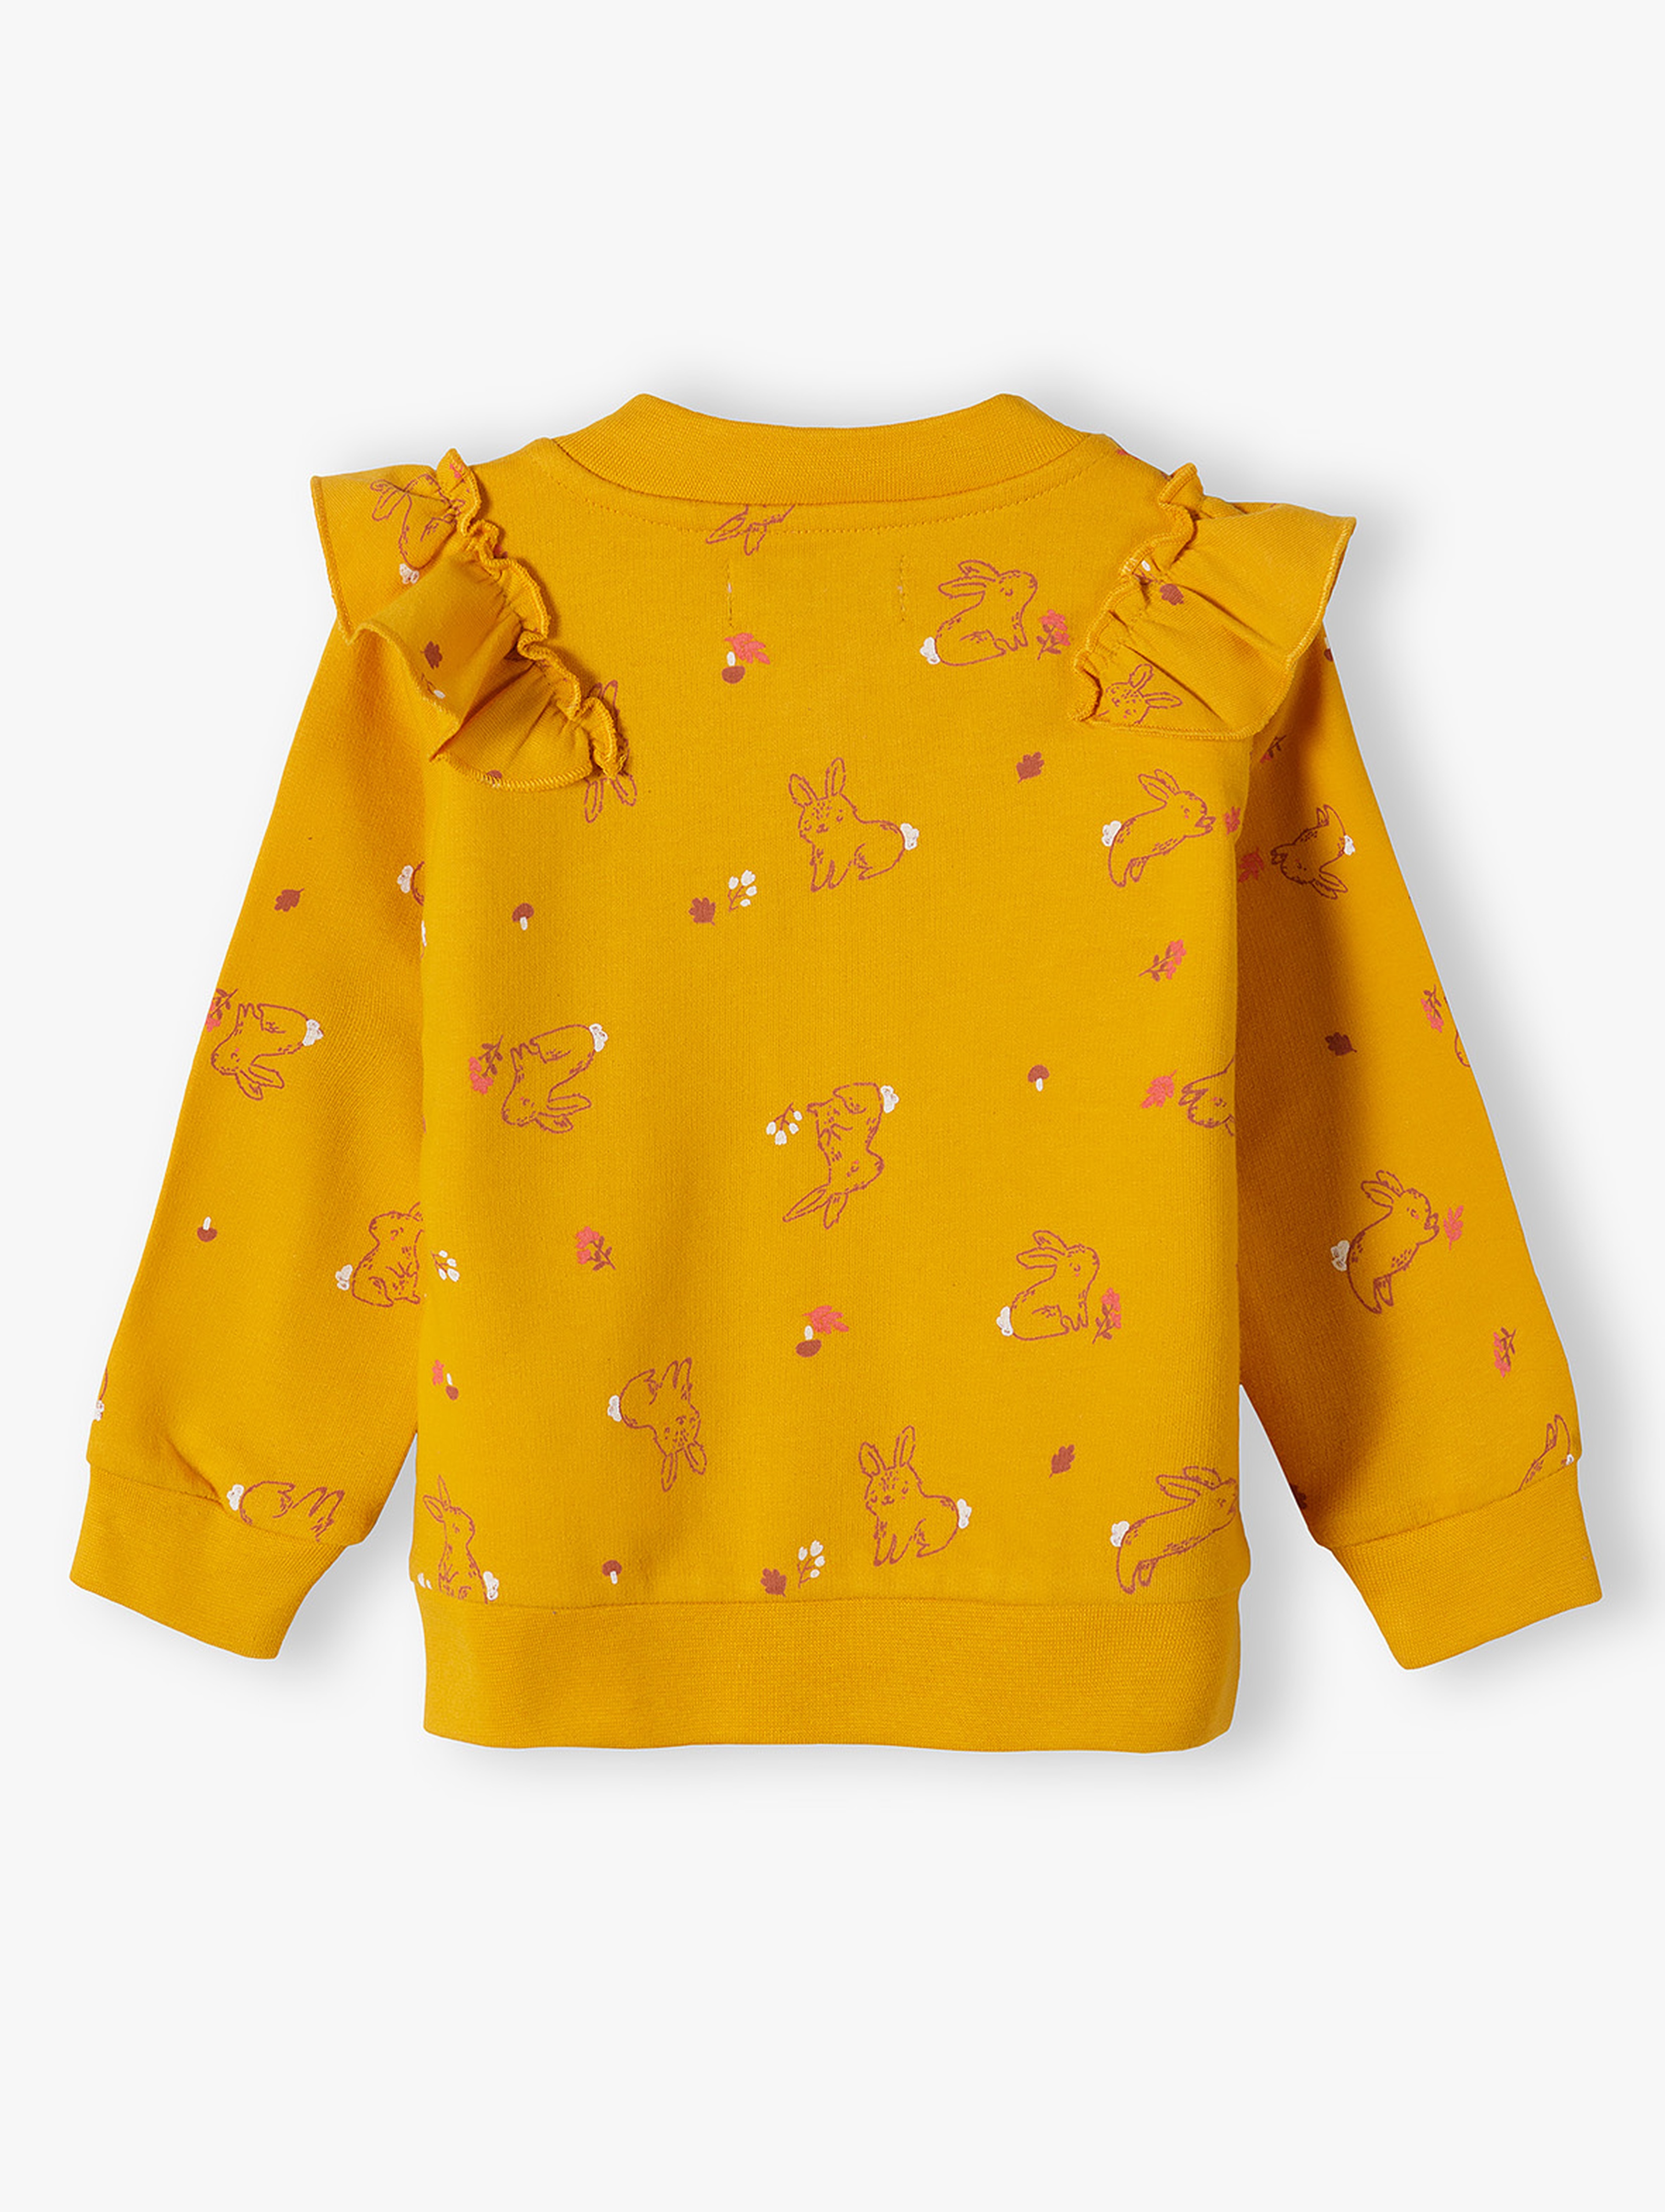 Bawełniana bluza niemowlęca dziewczęca z ozdobną falbanką - pomarańczowa